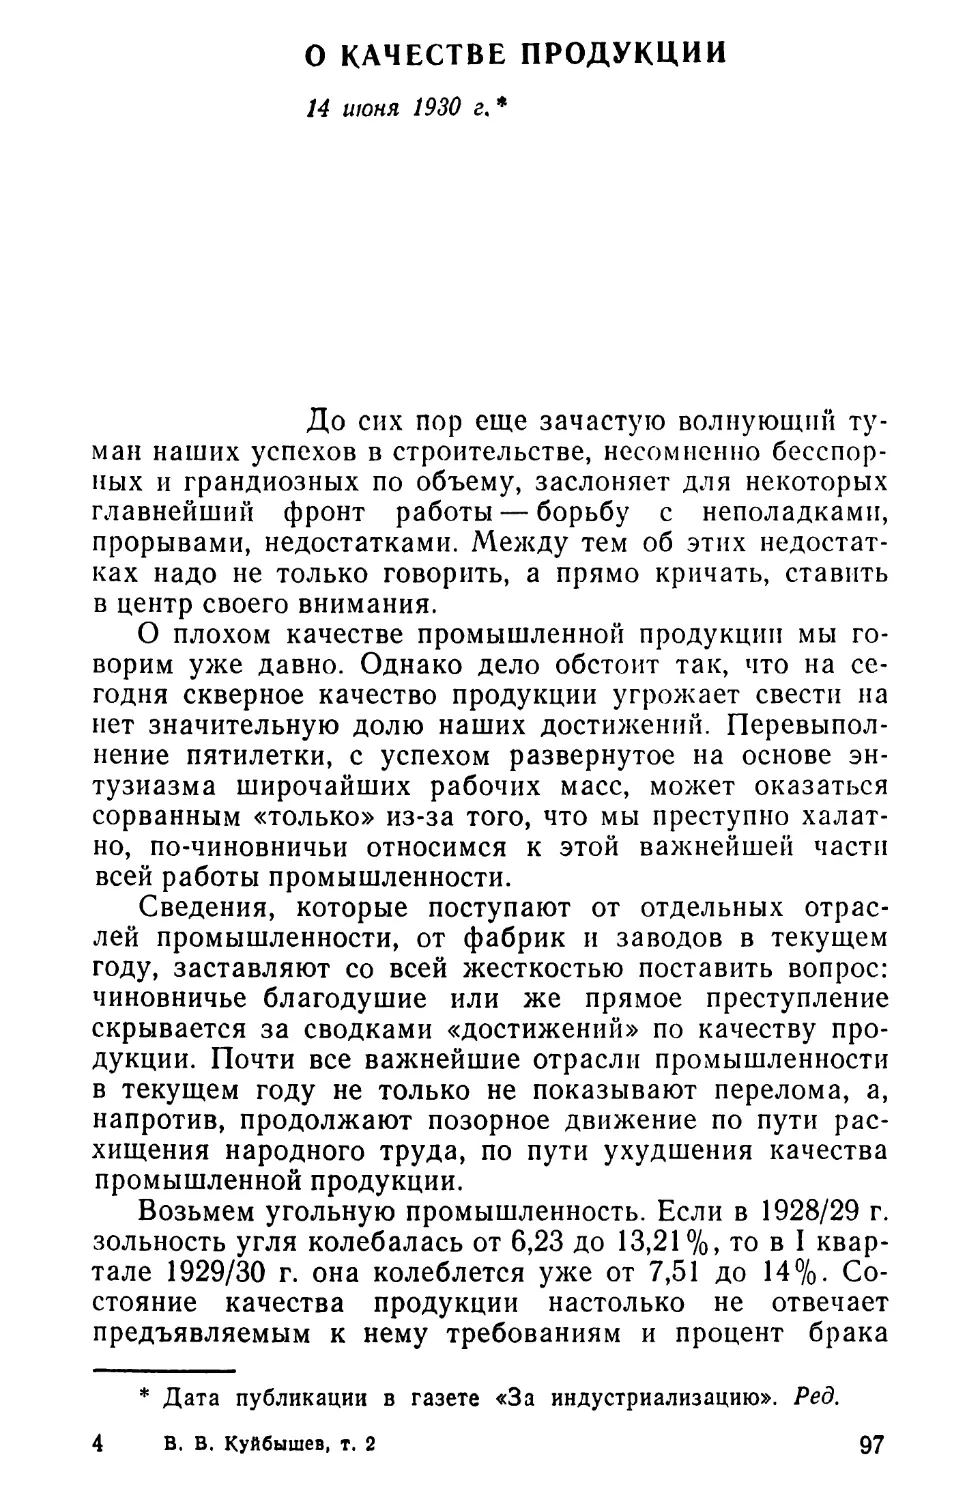 О КАЧЕСТВЕ ПРОДУКЦИИ. 14 июня 1930 г.